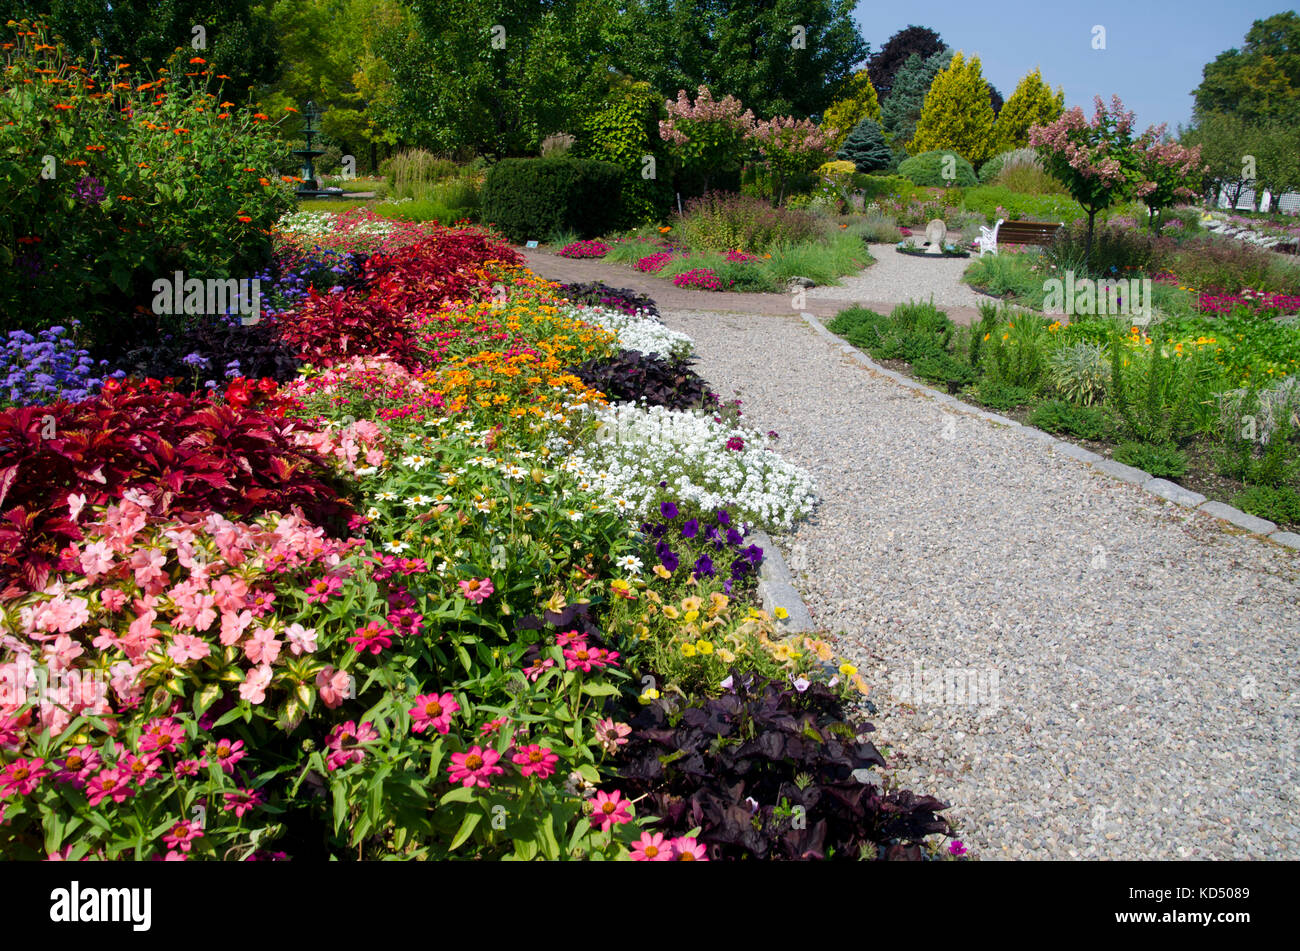 Pineland Farms giardini botanici in tarda estate con fiori che sbocciano e sentieri di ghiaia, Nuova Gloucester Maine, Stati Uniti d'America Foto Stock